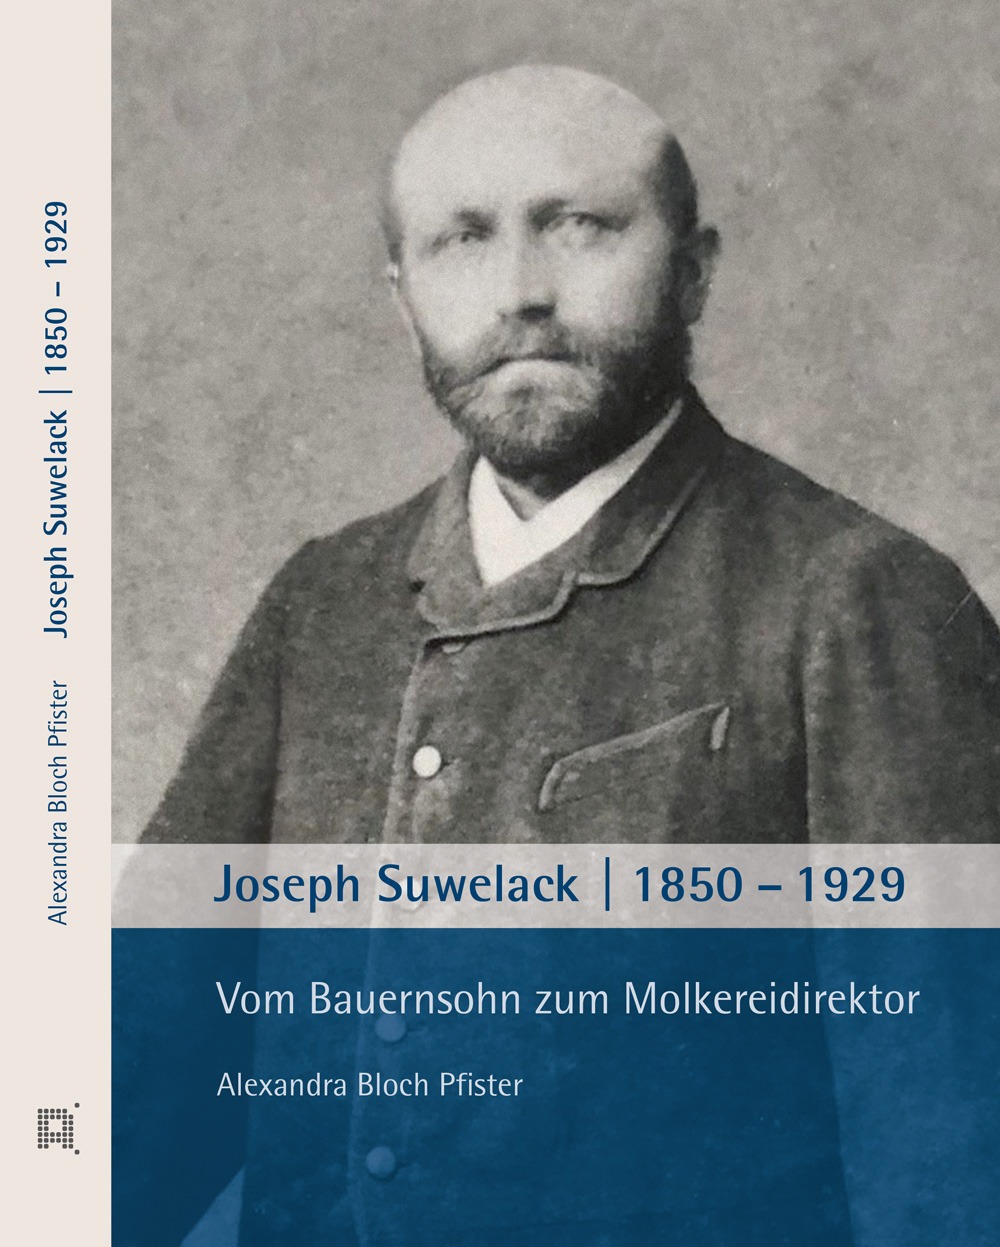 Vom Bauernsohn zum Molkereidirektor: Biografie Joseph Suwelack